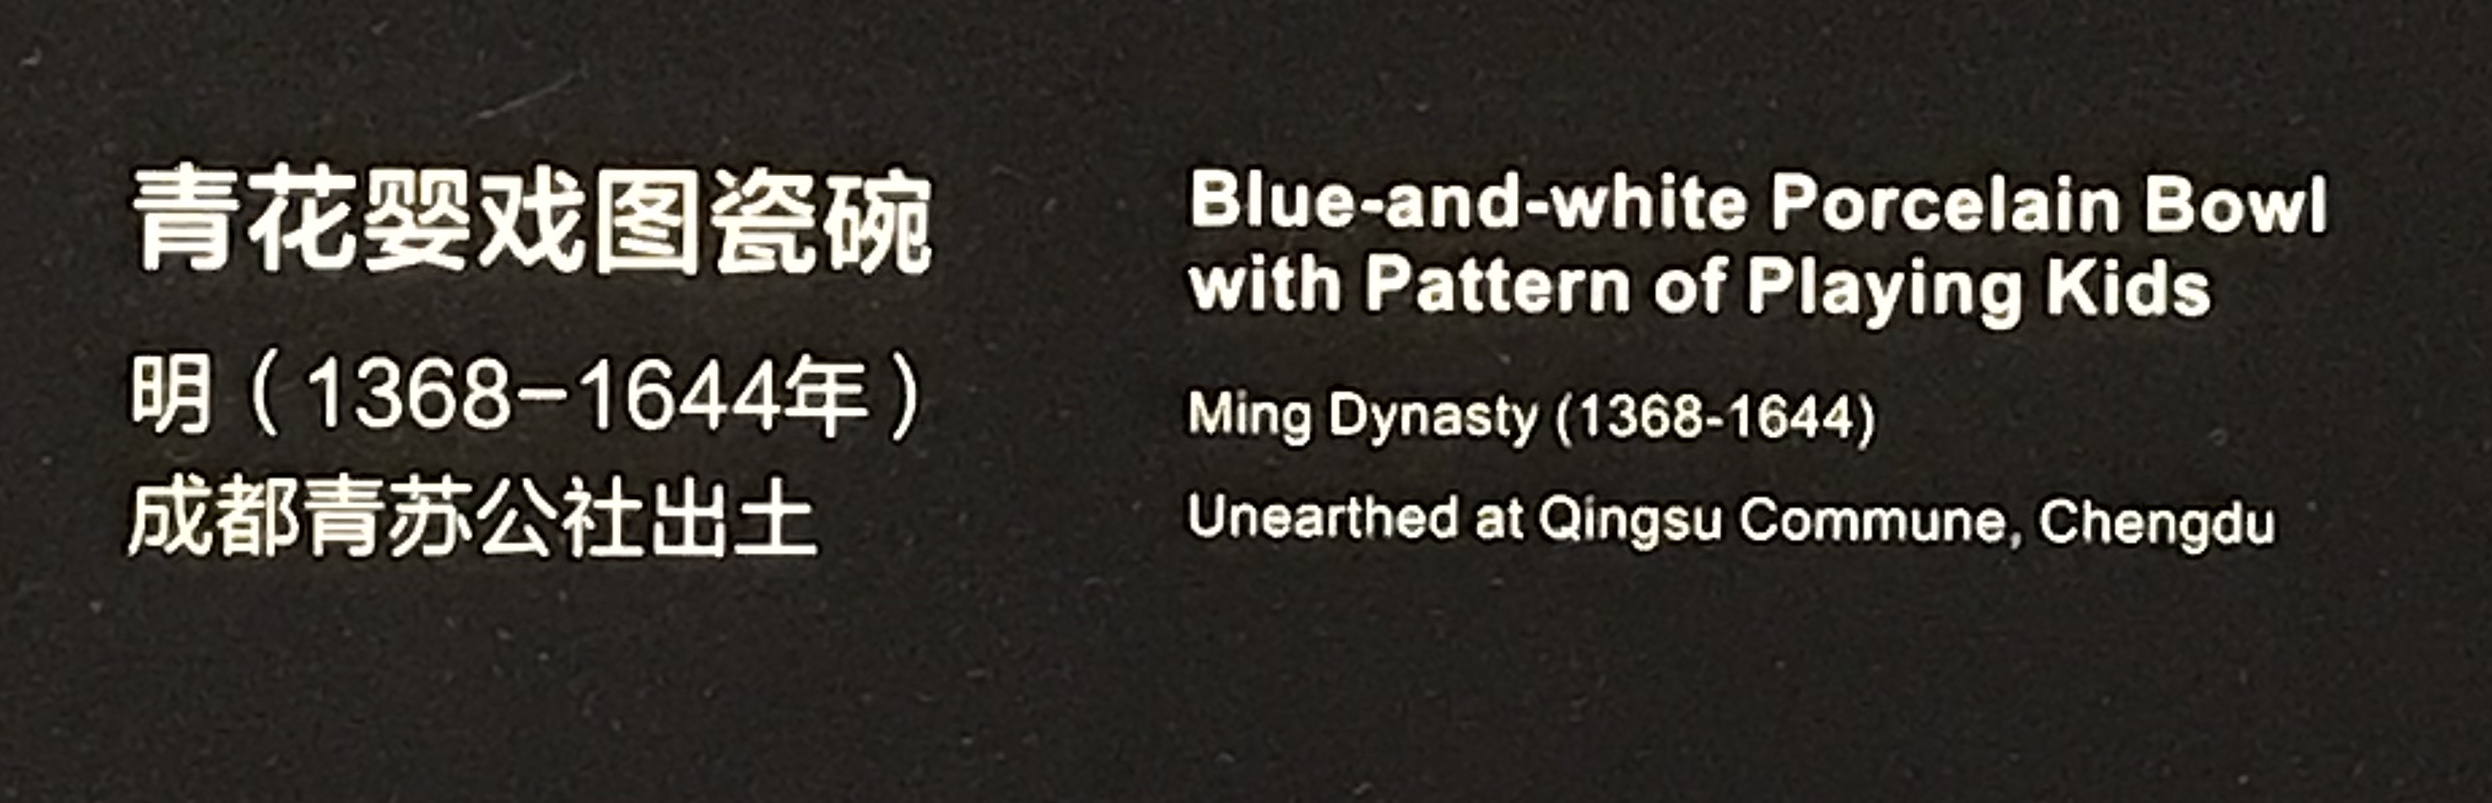 青花嬰戲図磁碗1-明清時代-常設展F３-成都博物館